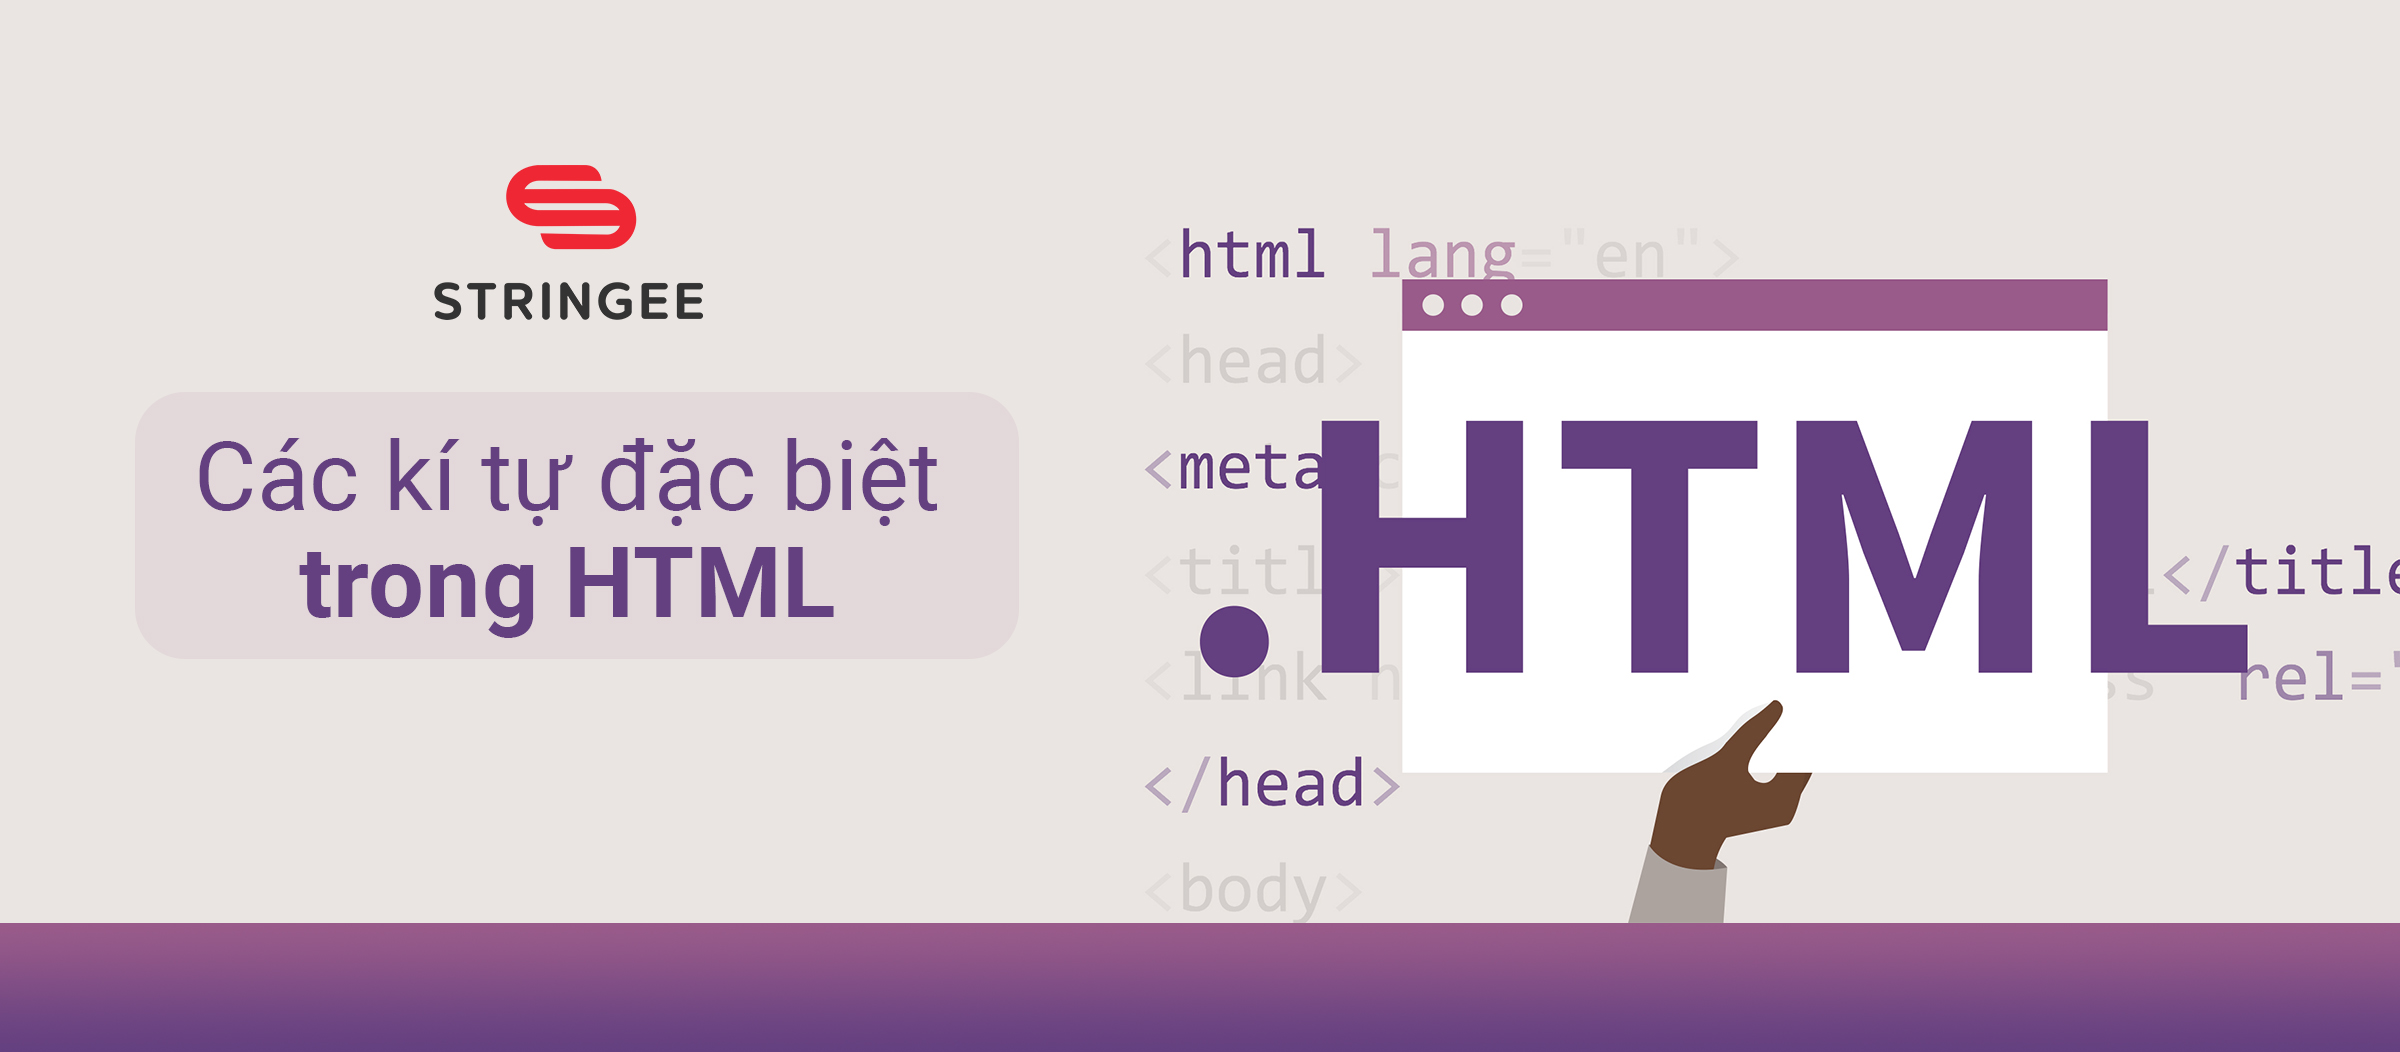 Các ký tự đặc biệt trong HTML và cách sử dụng